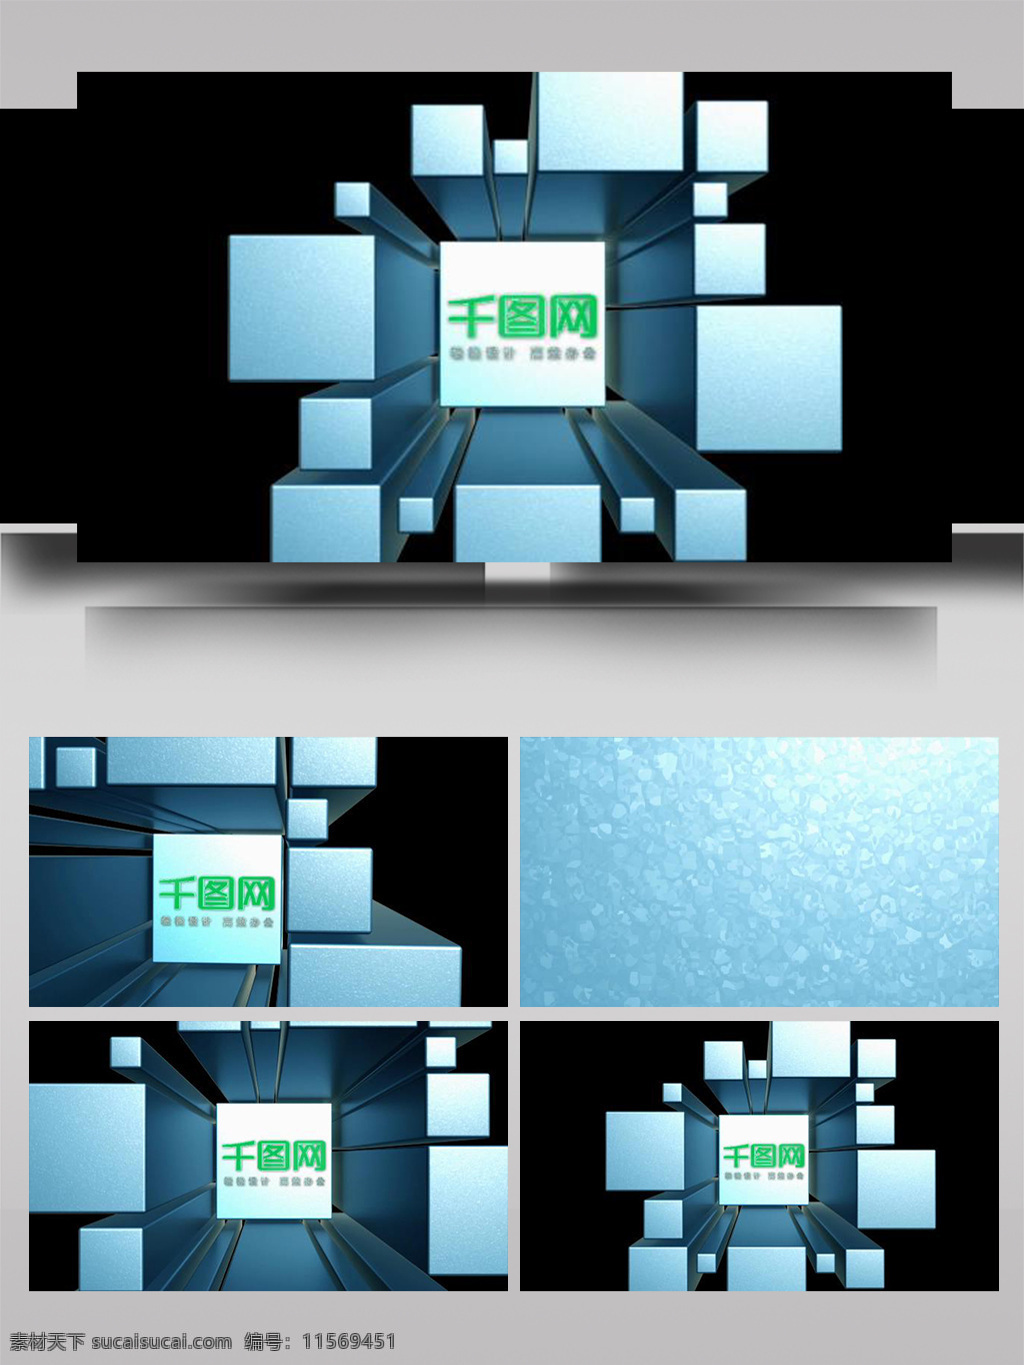 大气 立方体 组合 切换 标志 展示 ae 模板 动画 3d标志 破碎 闪动 动态 logo 片头